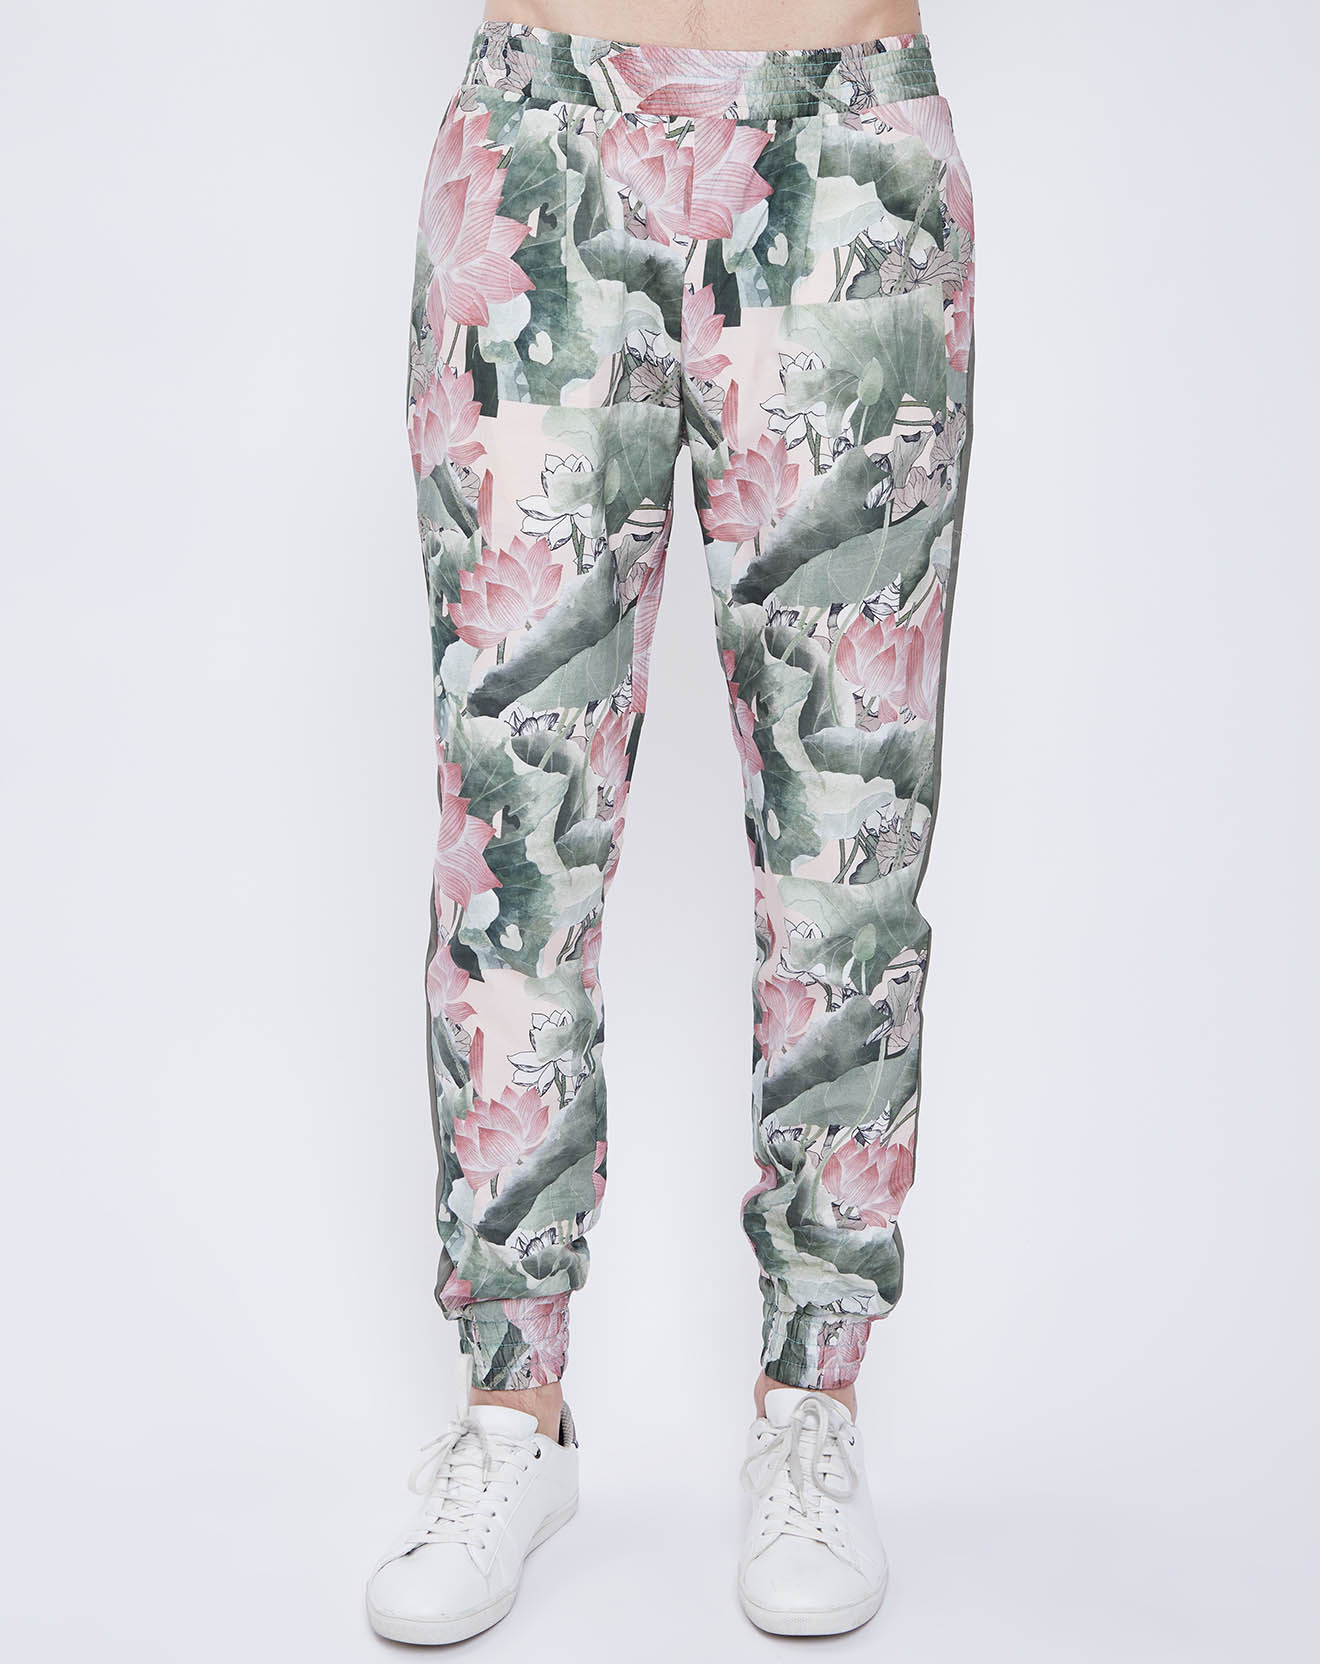 Pantalon imprimé floral rose/vert